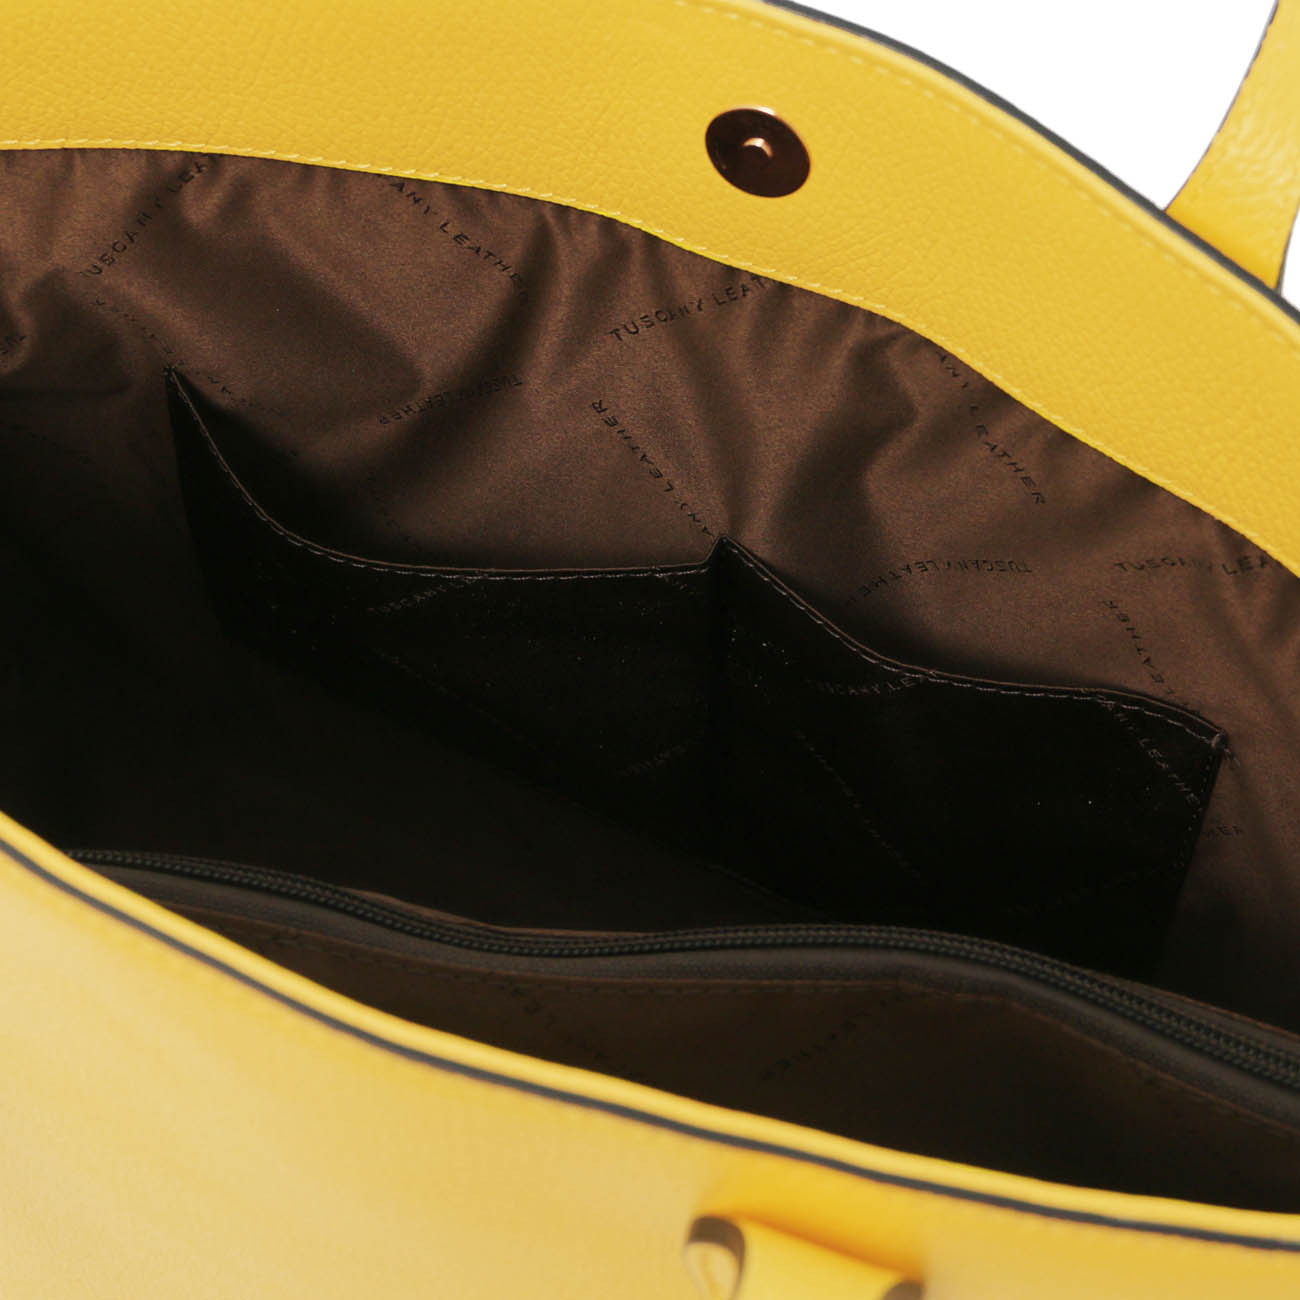 olasz női táska bőrtáska válltáska webáruház webshop Tuscany Leather